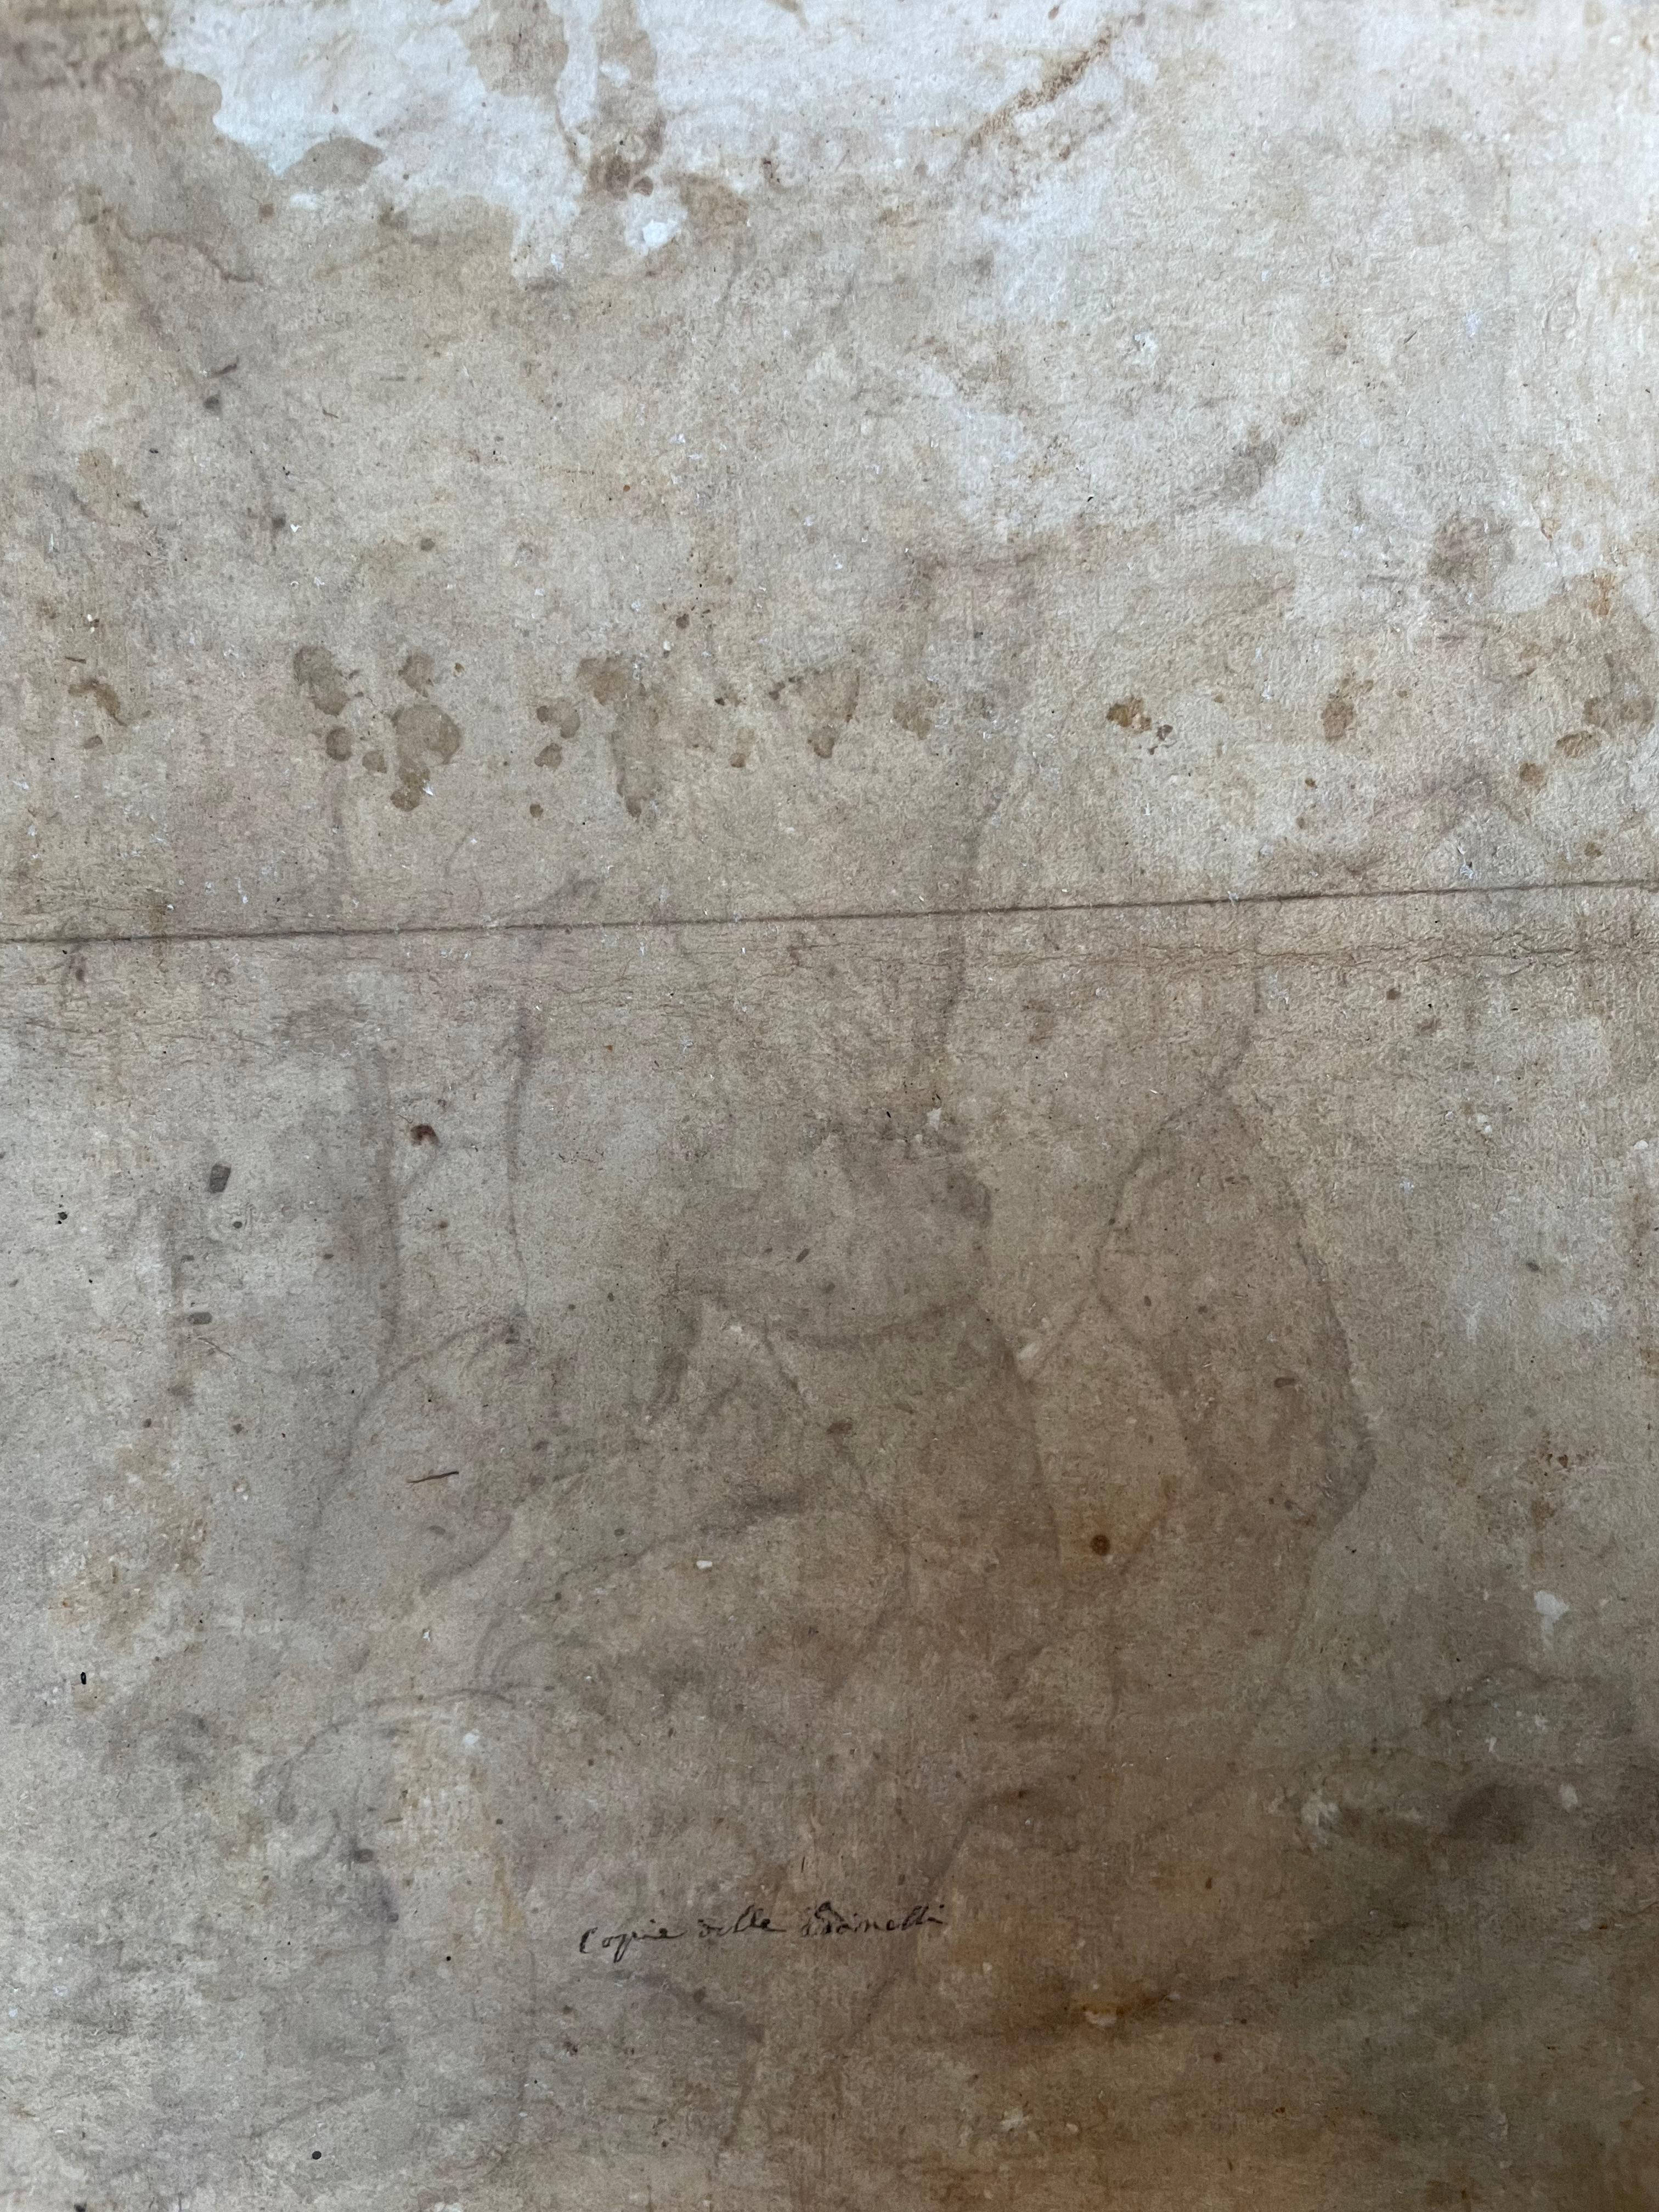 Jacopo Zanguidi BERTOJA (1544-1574)
Combat de cinq personnages, bas-relief de l'École d'Athènes d'après Raphael

Encre sur papier
43×34cm

Une chose intéressante
Selon le professeur David Ekserdjian, l'inscription sur notre feuille

